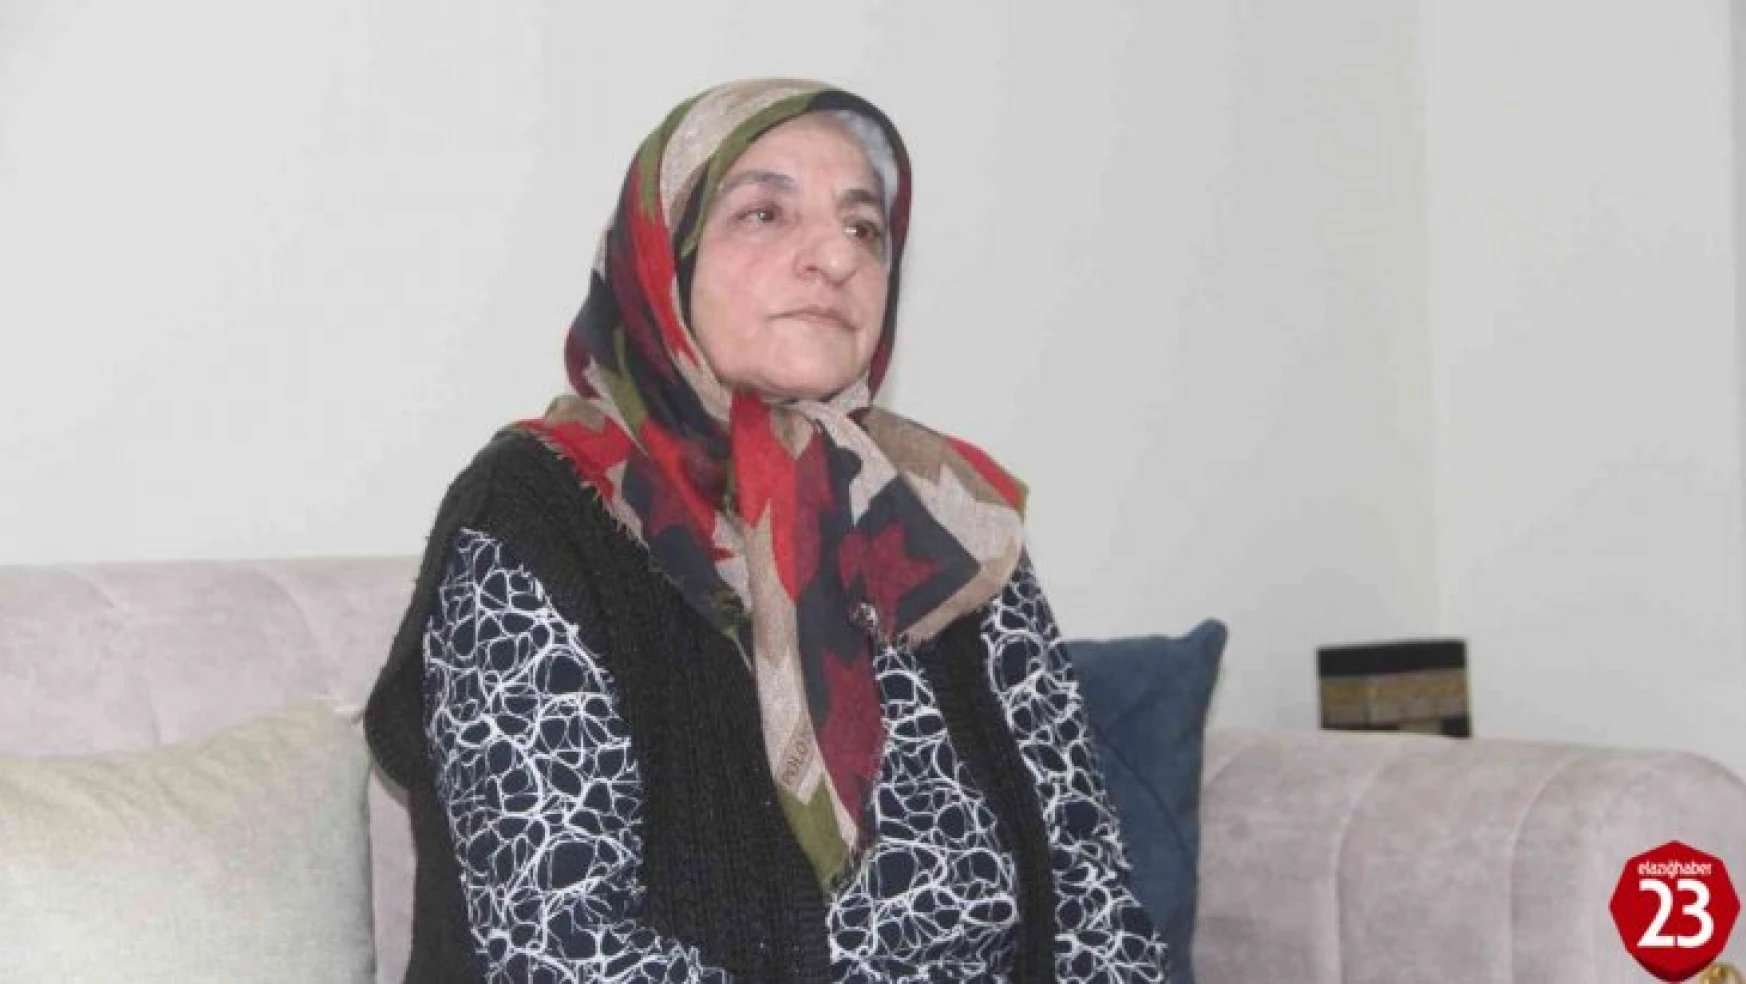 Elazığ depreminde kızını kaybeden acılı anne: '3 yıl hiç unutamadım, sanki kızımı yeni gömdüm'